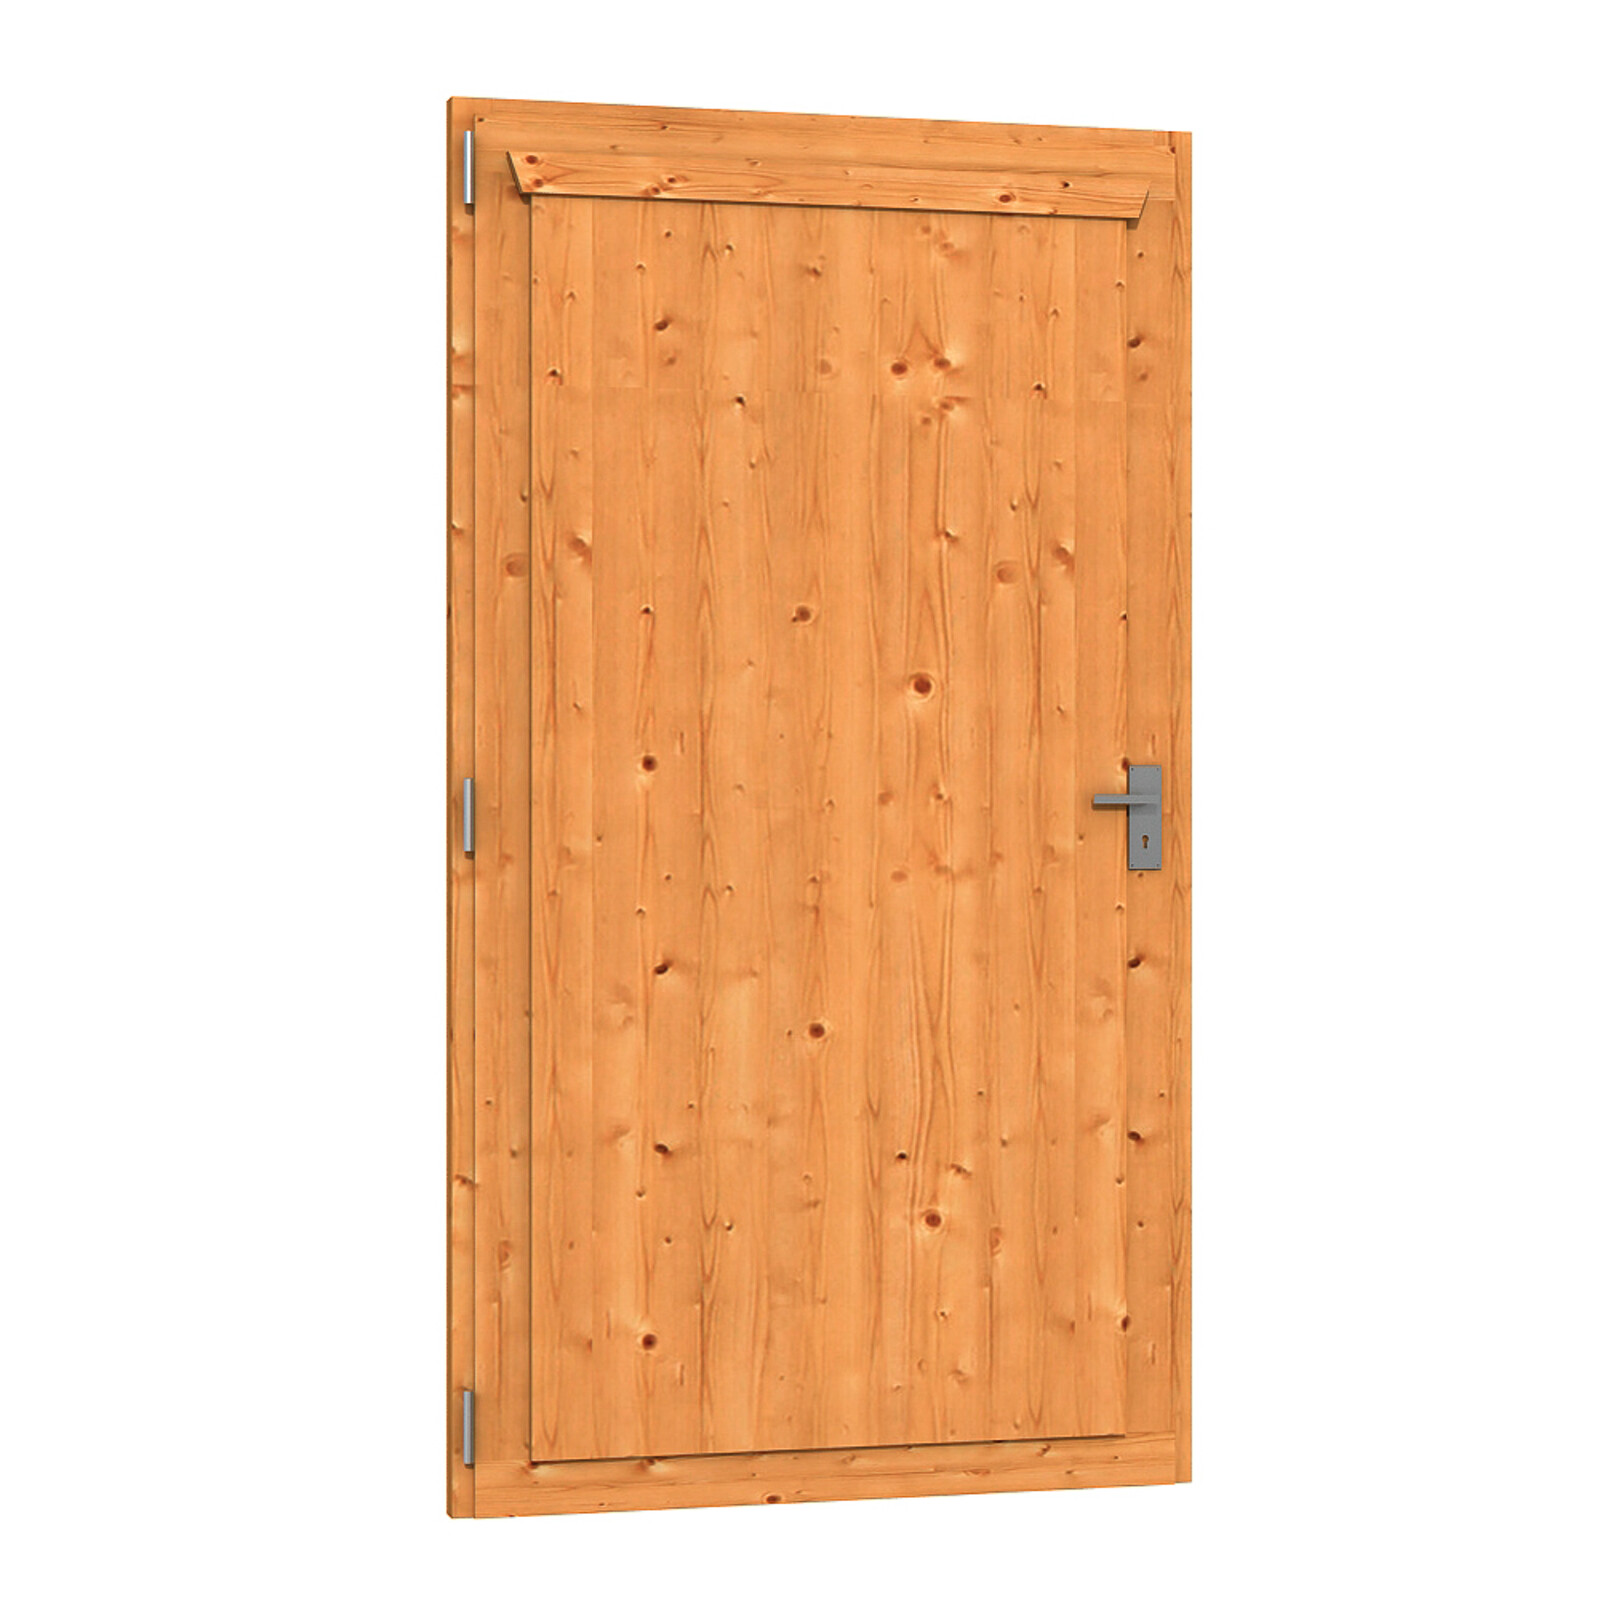 Porte simple 98 x 198 cm, dimensions de passage 82 x 190 cm, traitement coloré chêne clair